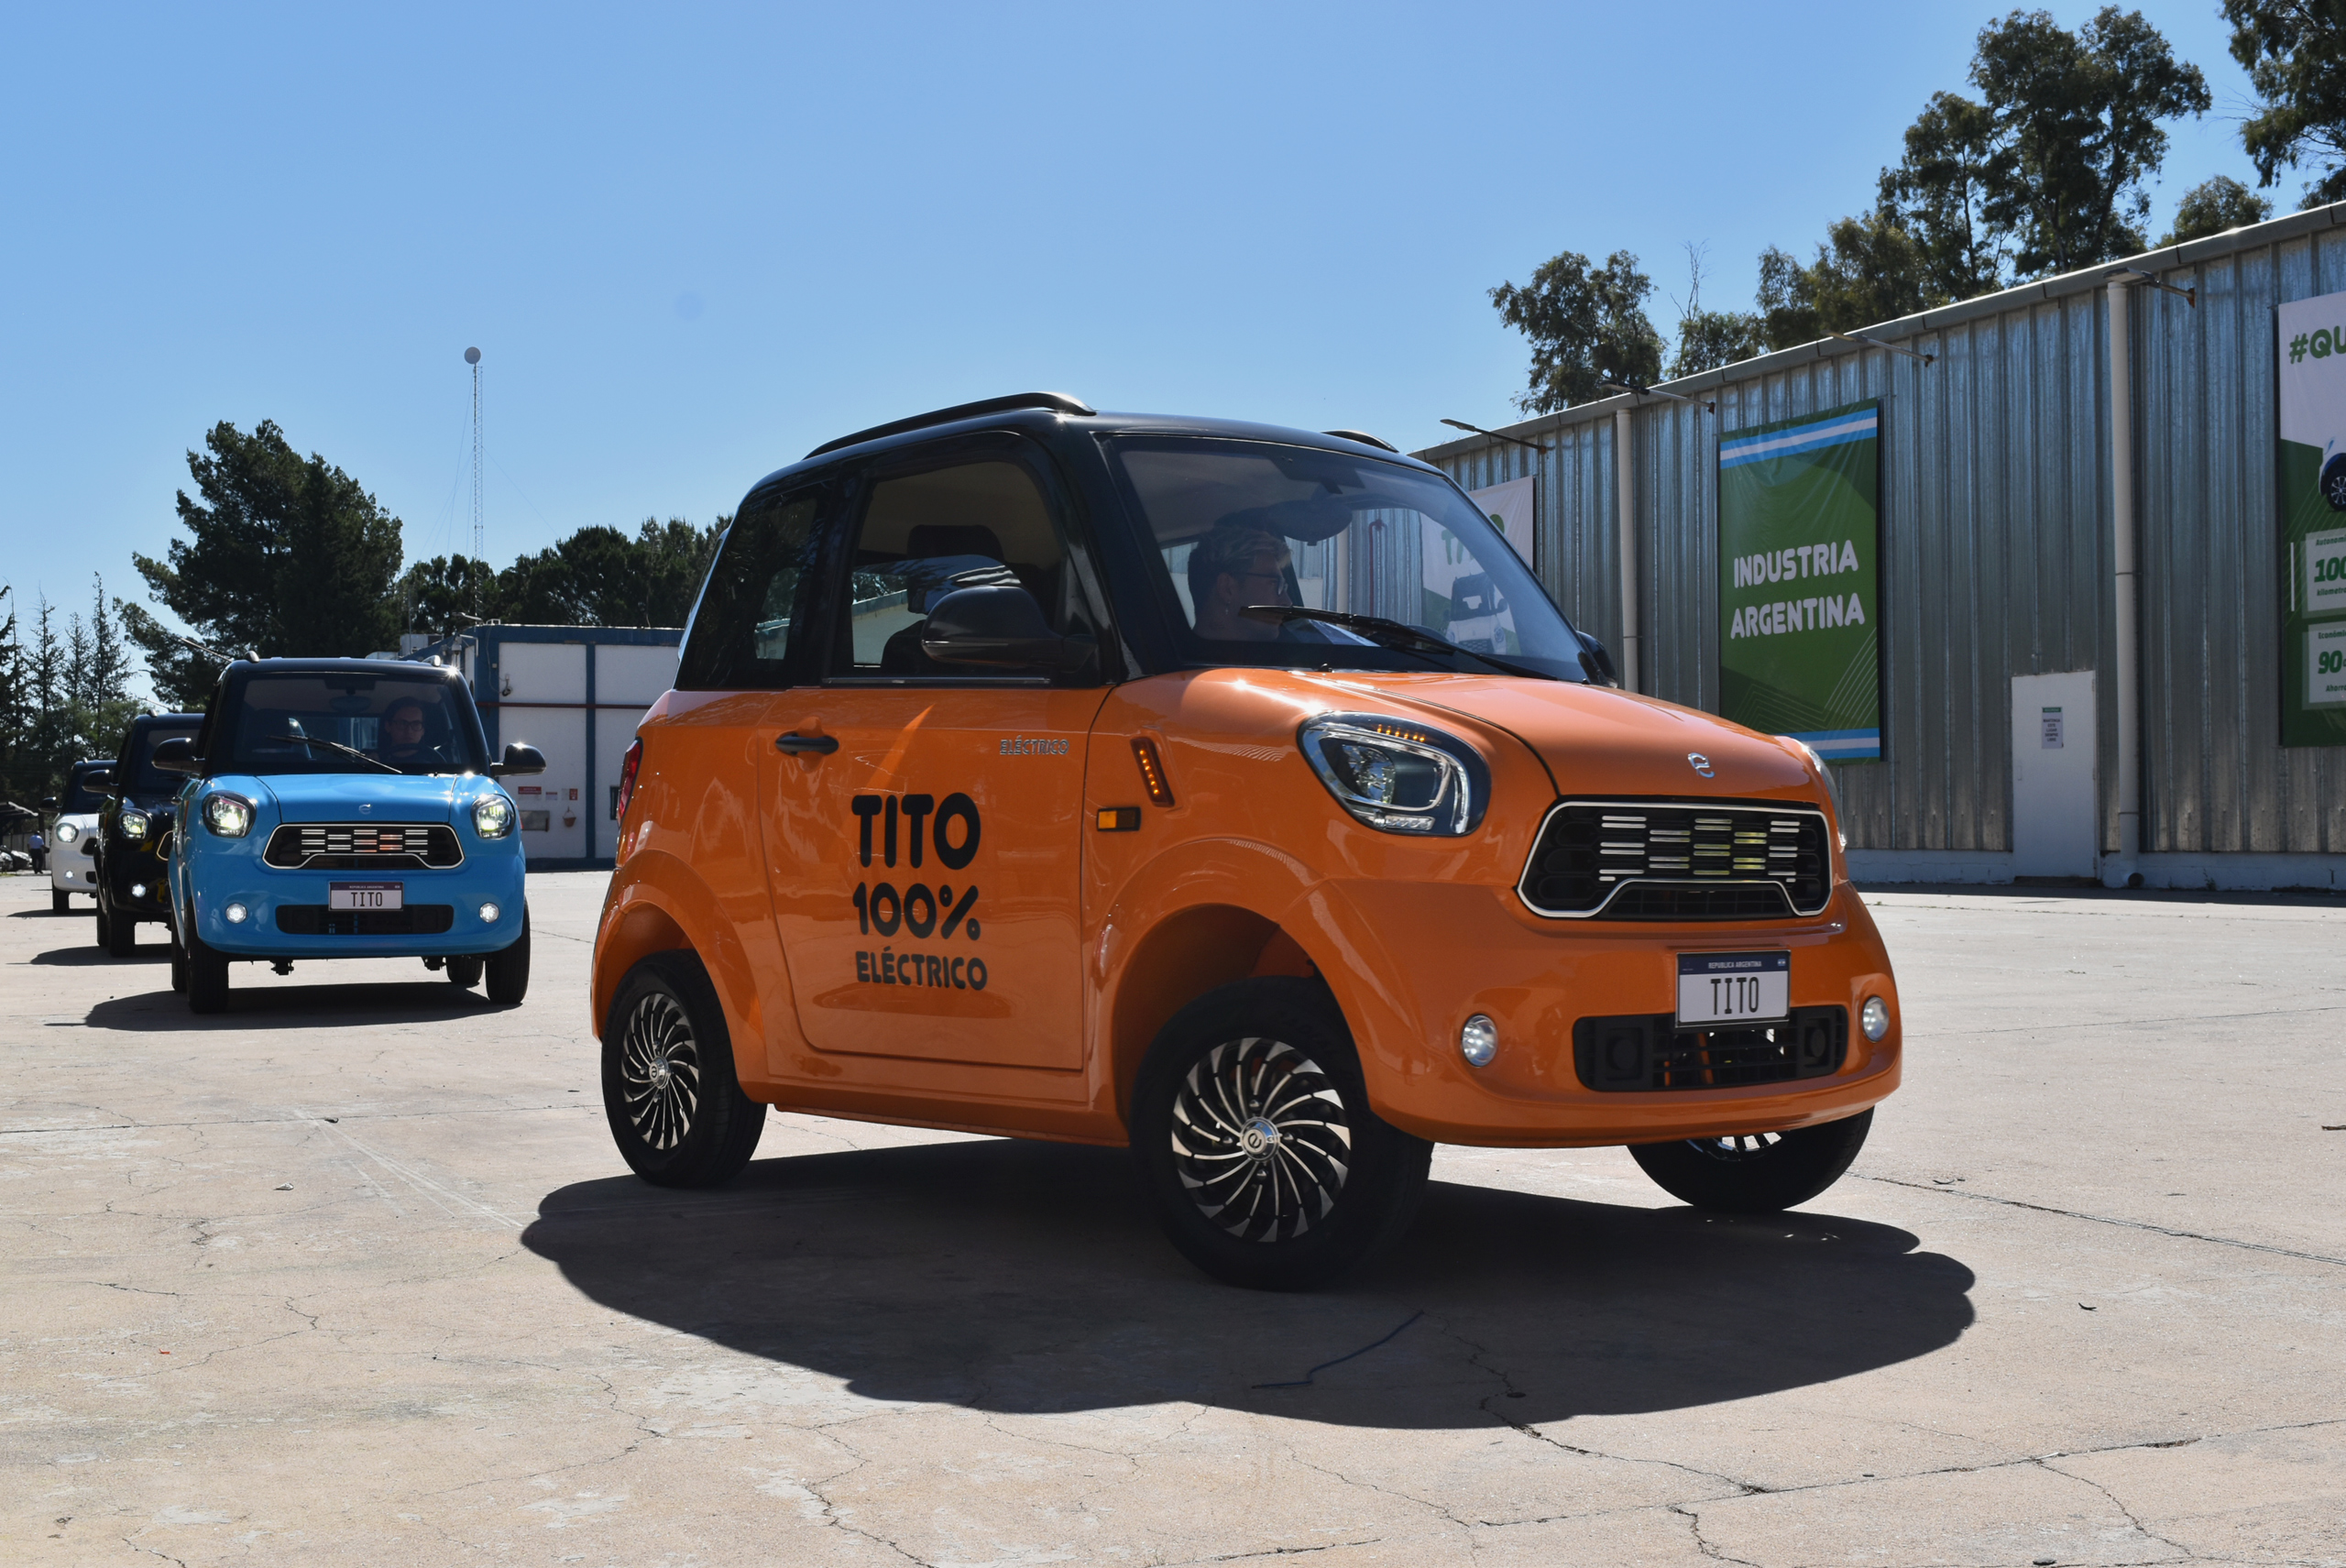 <p>Exposição do compacto Tito, primeiro carro elétrico de fabricação argentina. A mobilidade elétrica cresce lentamente no país devido a entraves culturais e econômicos do setor (Imagem: Coradir)</p>